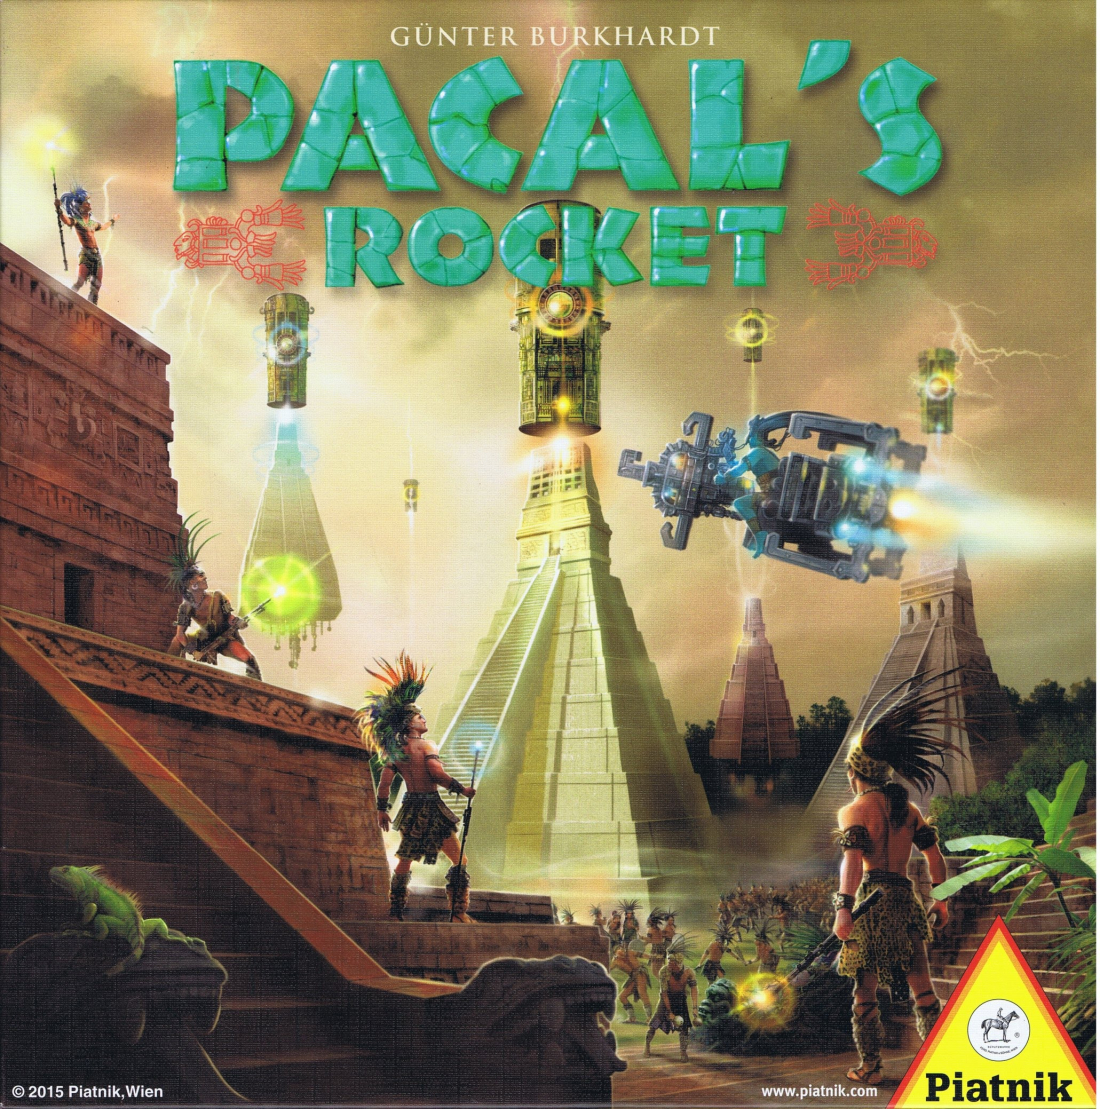 visuel Pacal's rocket